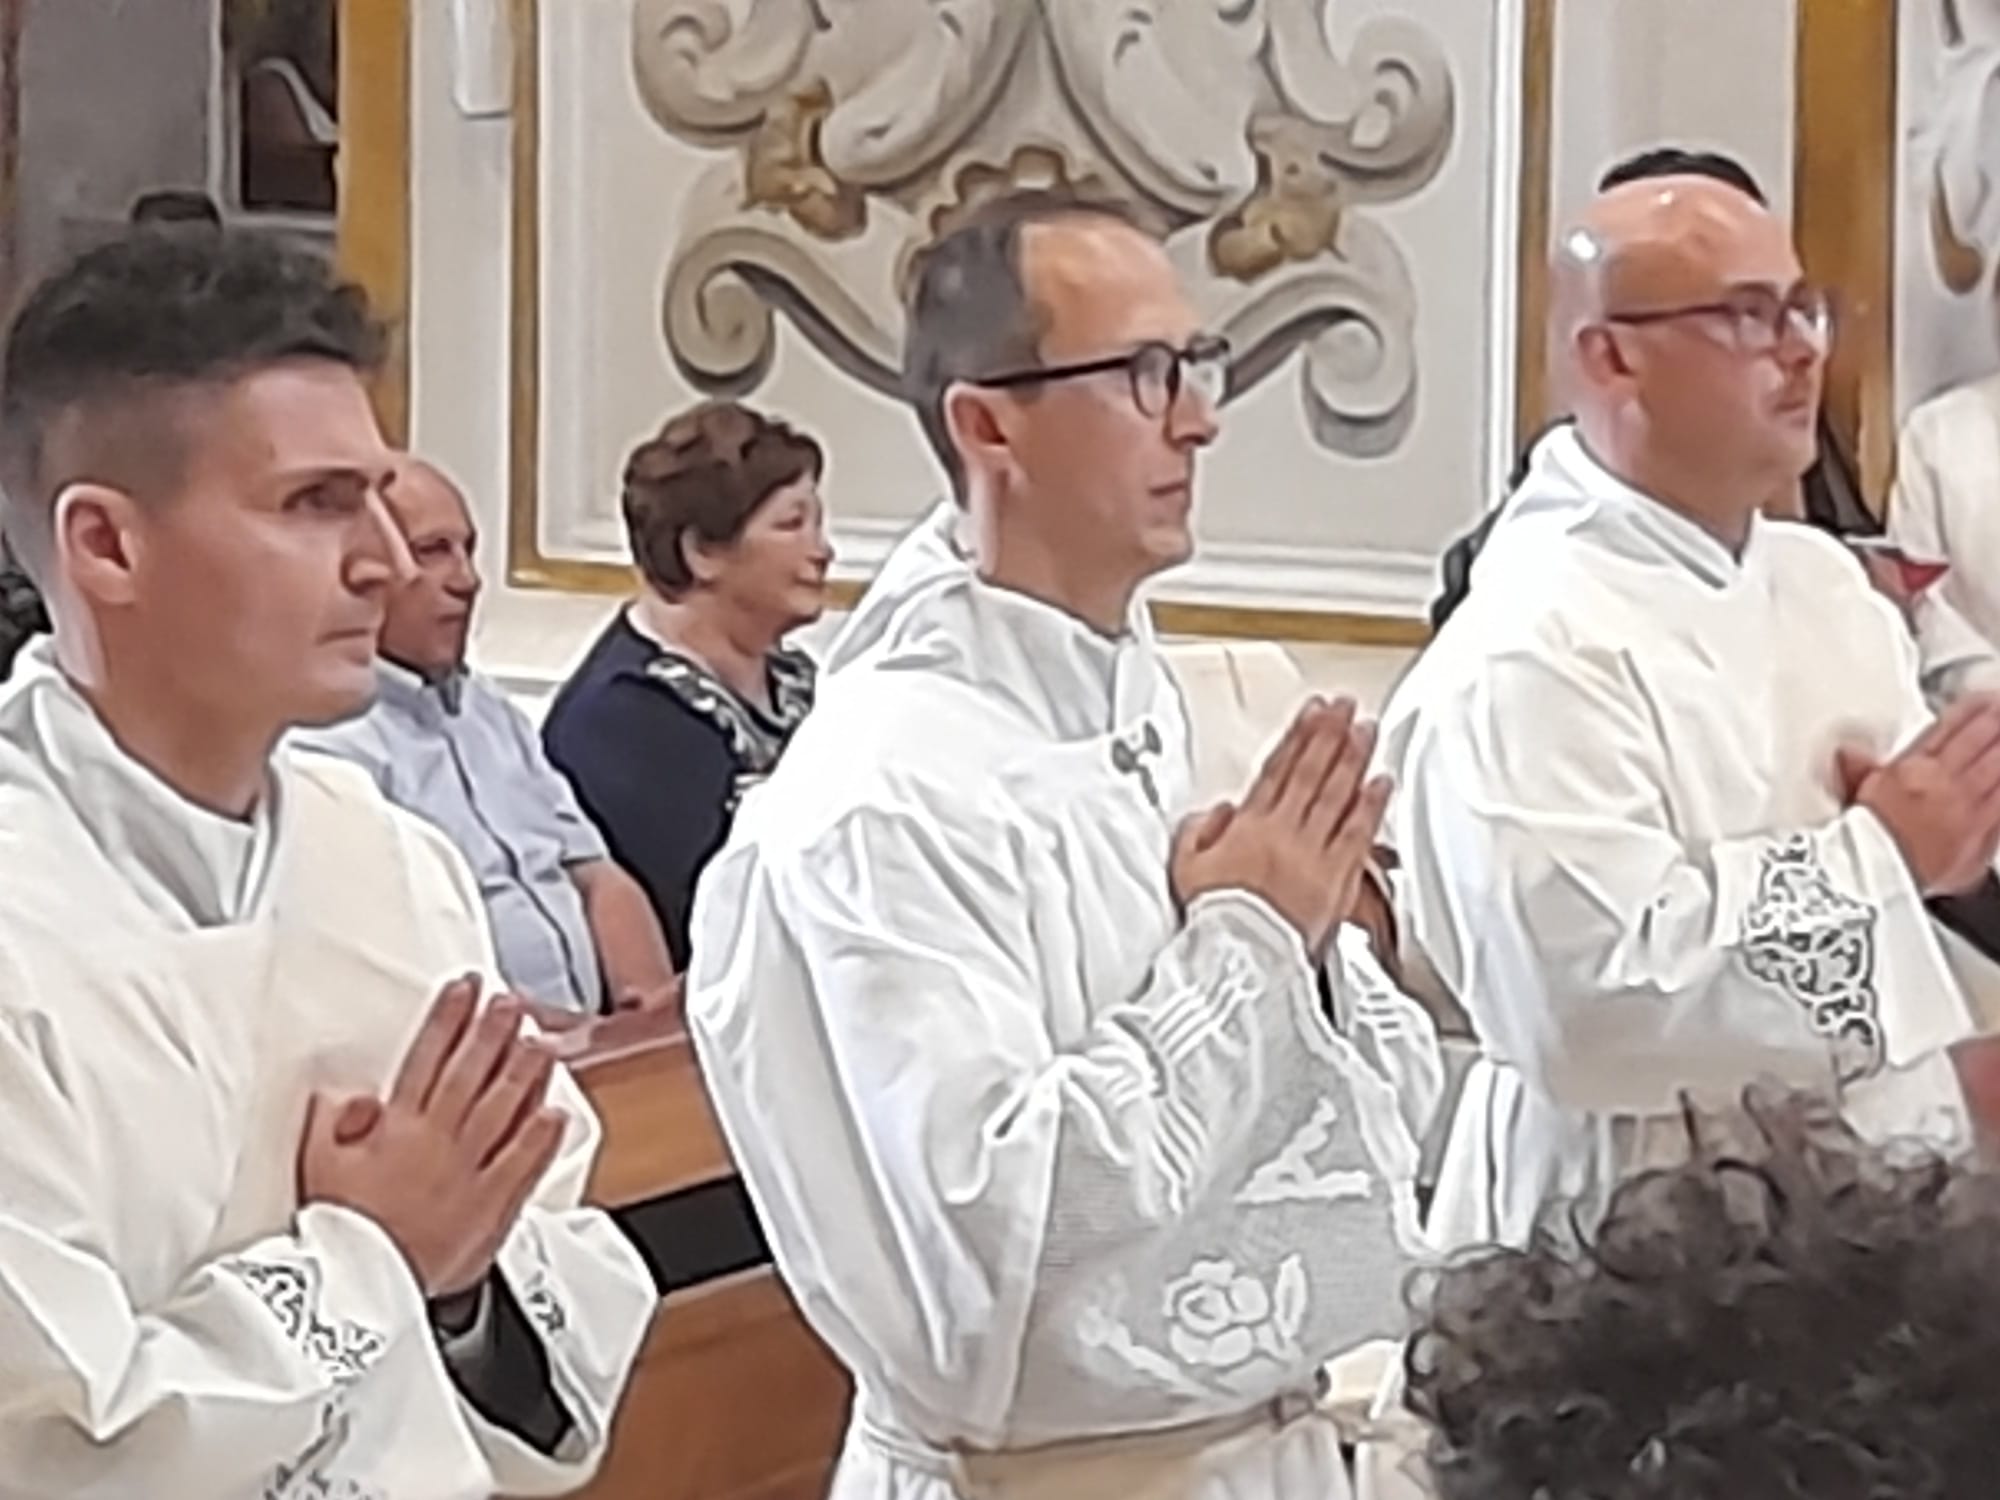 La diocesi di Caltanissetta fa festa ai tre nuovi presbiteri: Vescovo Russotto: “Il prete, uomo di Dio, radicato in mezzo agli uomini ma senza fissa dimora”